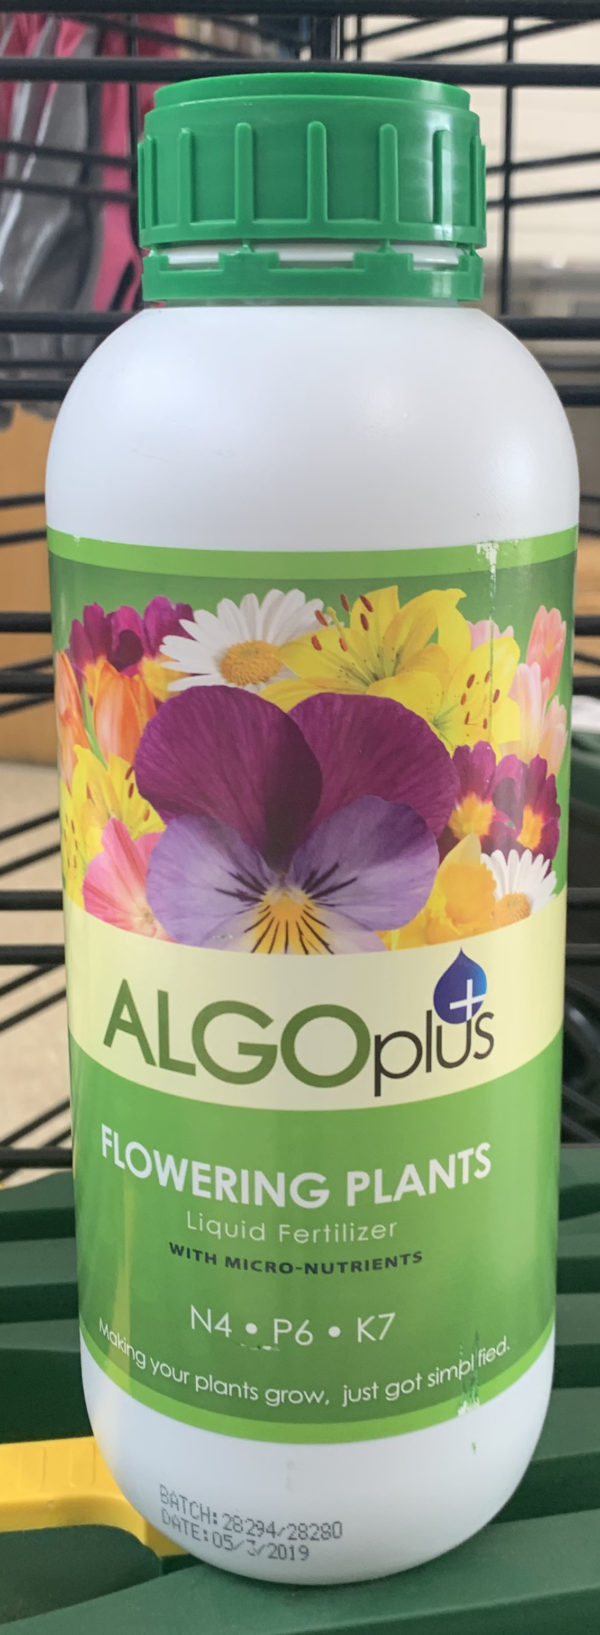 algoplus flower